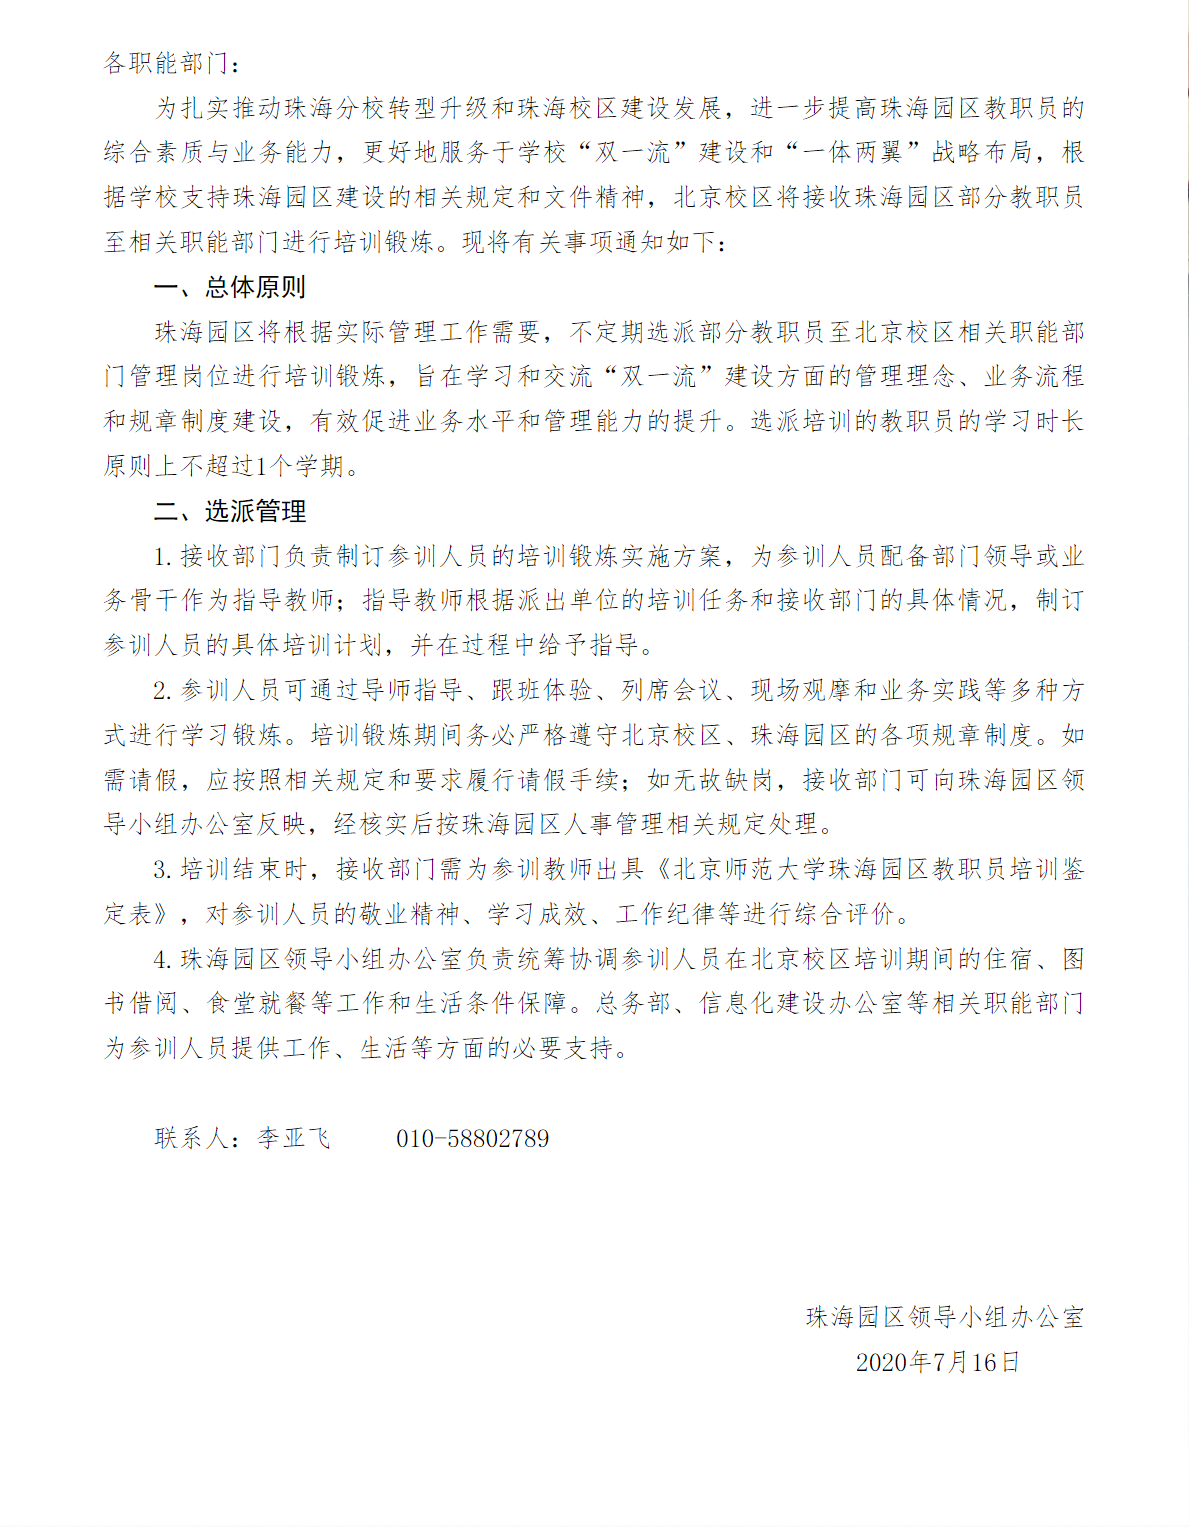 关于开展珠海园区教职员至北京校区培训锻炼的通知.png